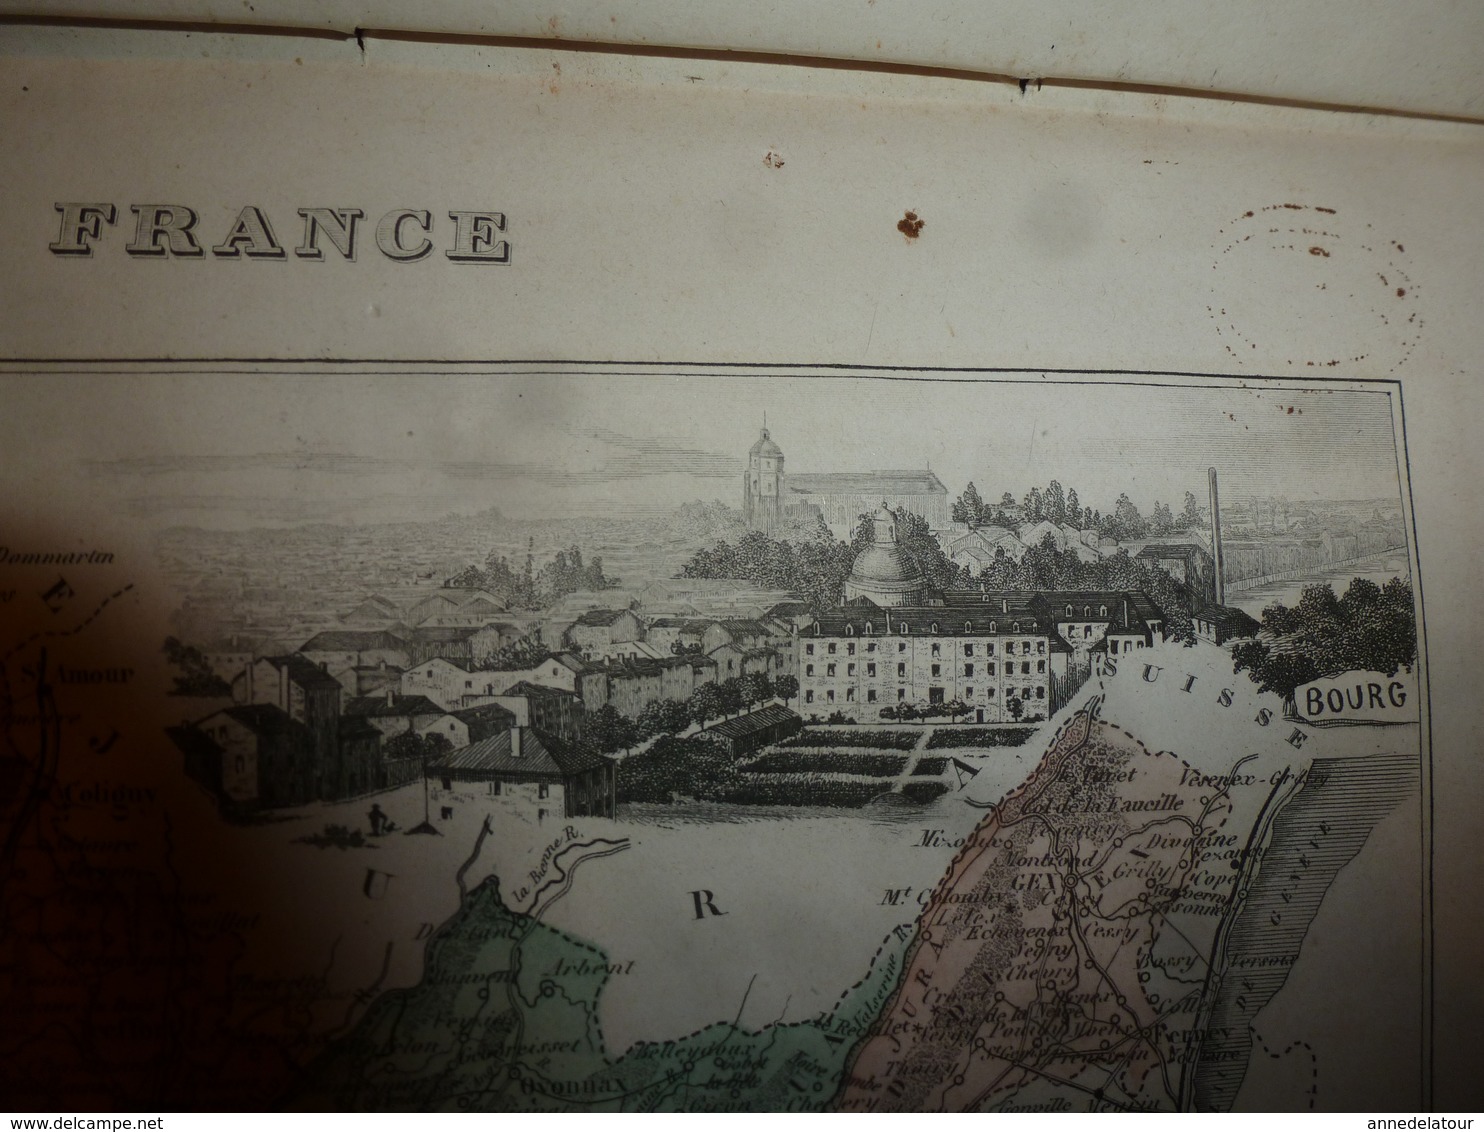 1880 : AIN (Bourg, Belley, Gex , Nantua, Trévoux, etc) Carte Géographique-Descriptive:grav.taille douce-Migeon,géographe